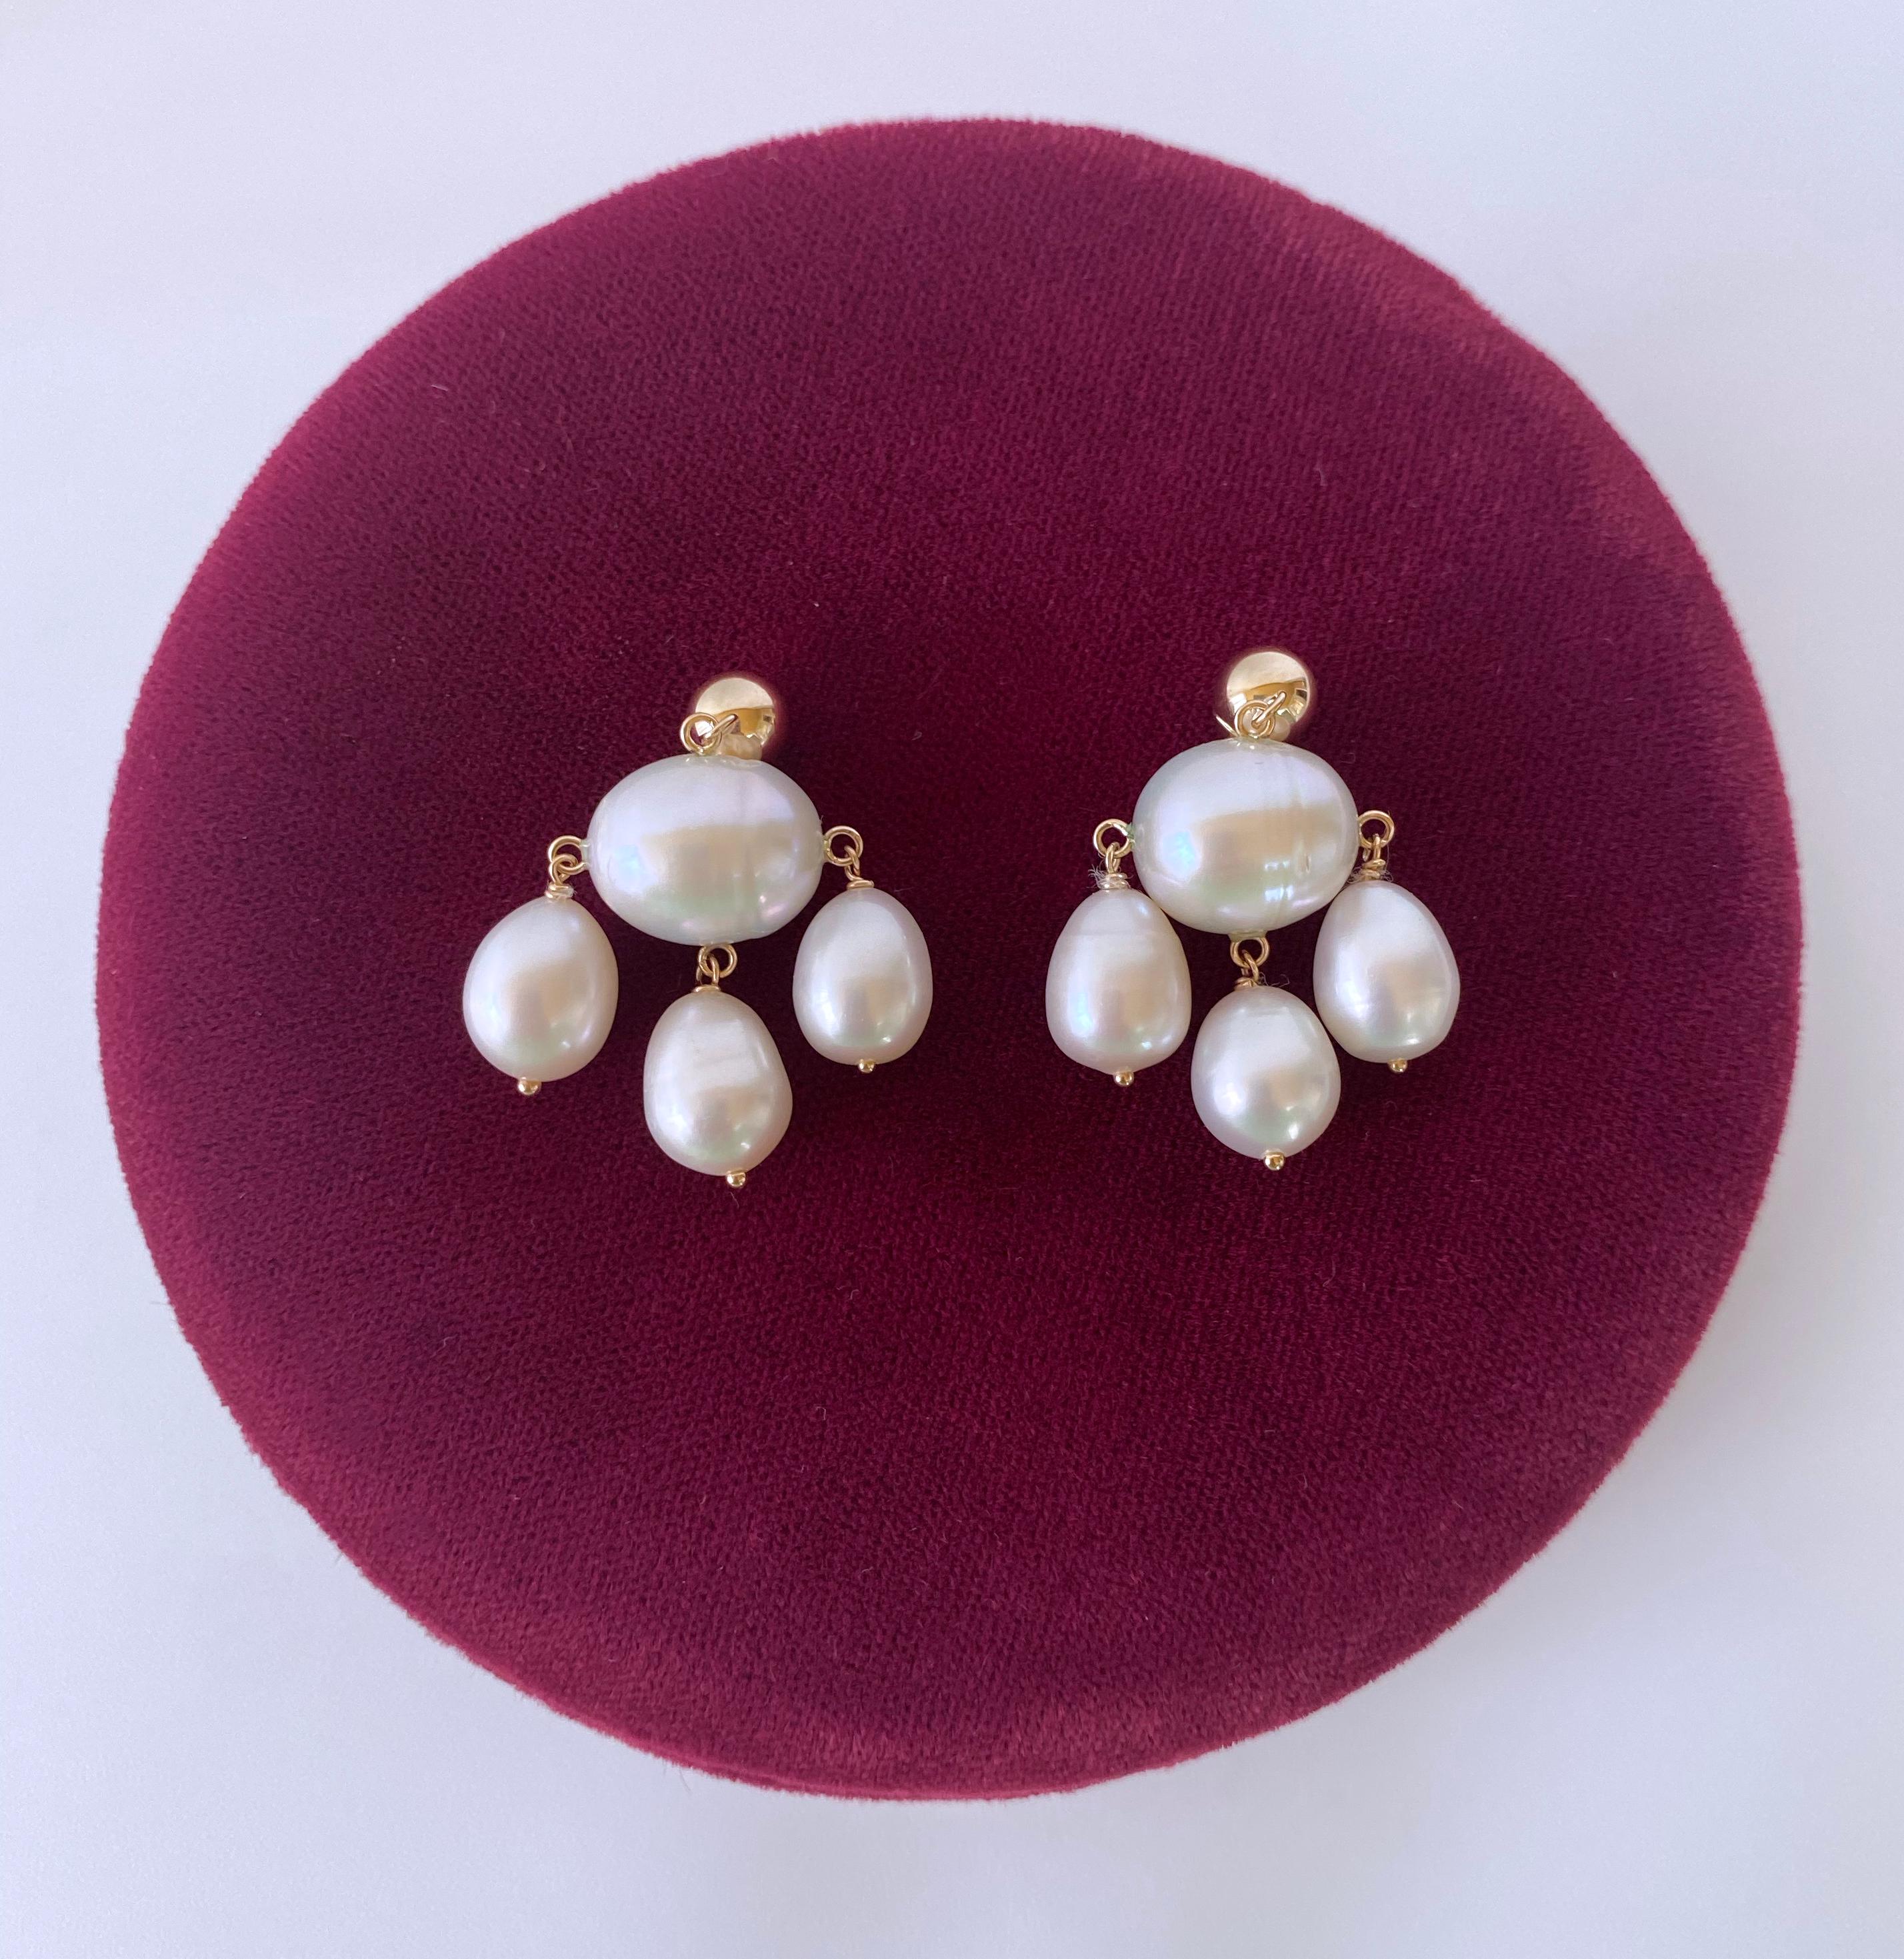 Ein wunderschönes Paar handgefertigter Ohrringe von Marina J. Dieses reizende Paar zeichnet sich durch hochglänzende weiße Perlen aus, die bei Lichteinfall wunderschöne Farbnuancen zeigen. In der Mitte hängt eine große ovale Barockperle, an der drei